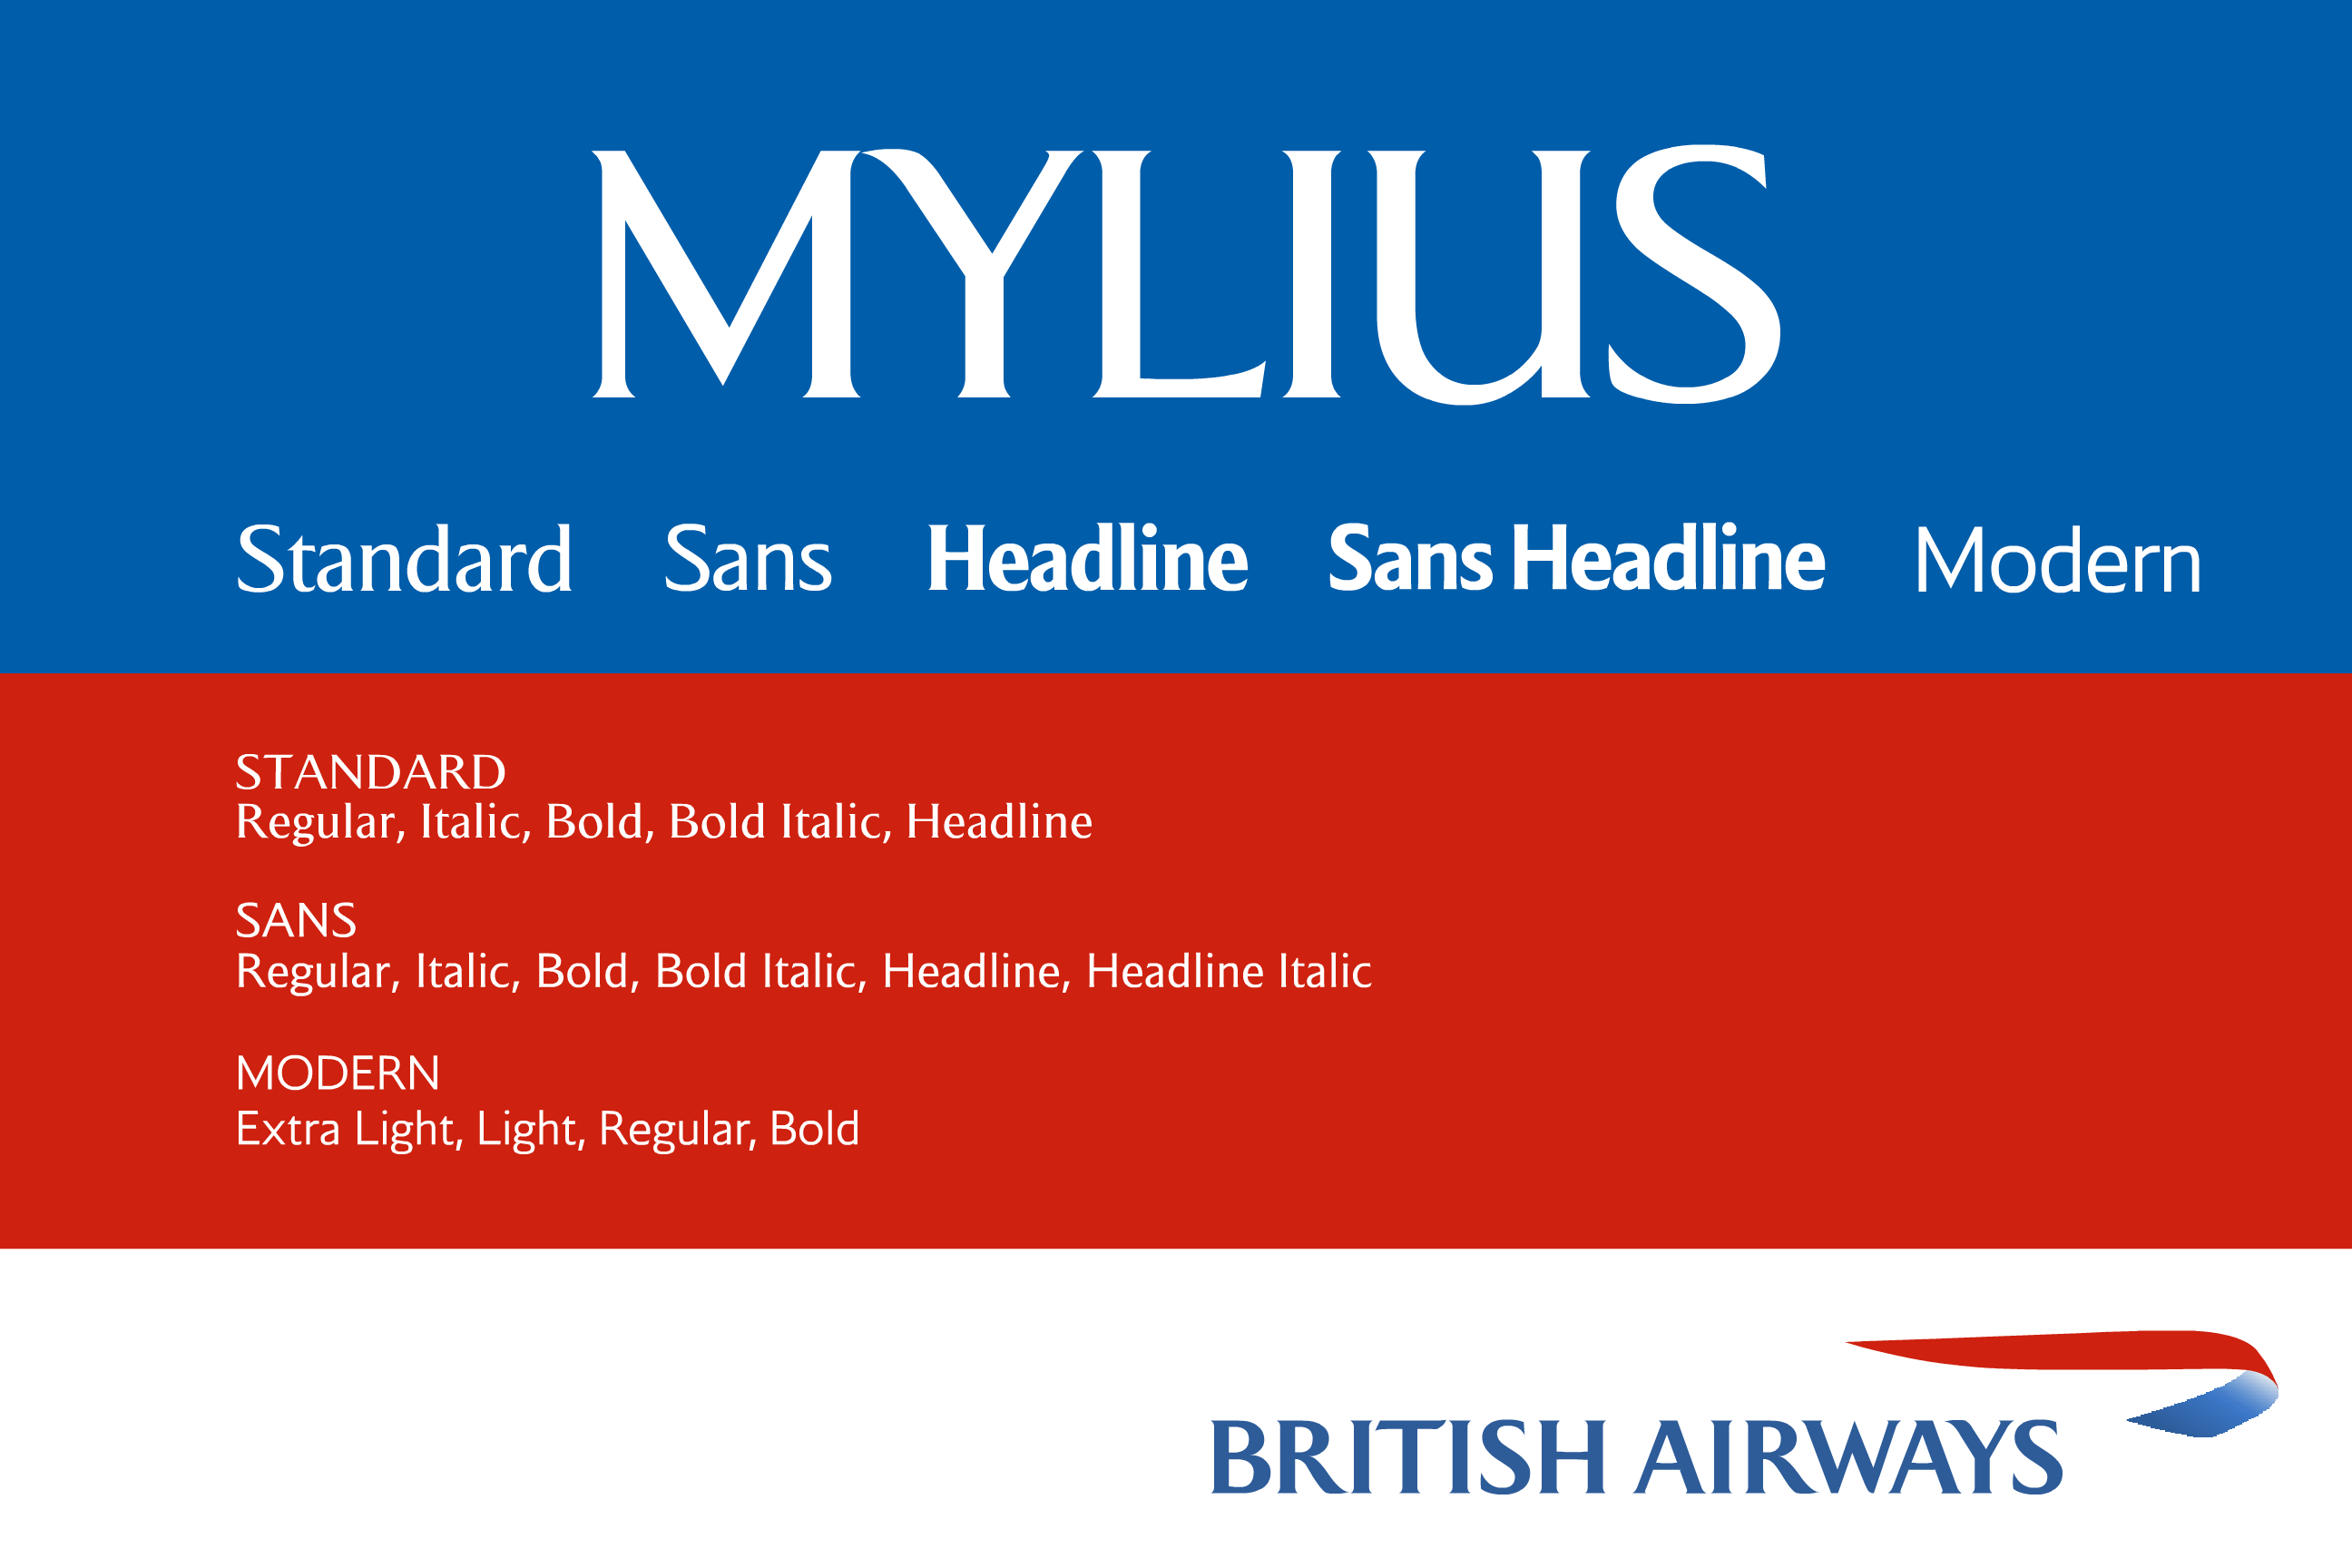 Police Mylius (British Airways)